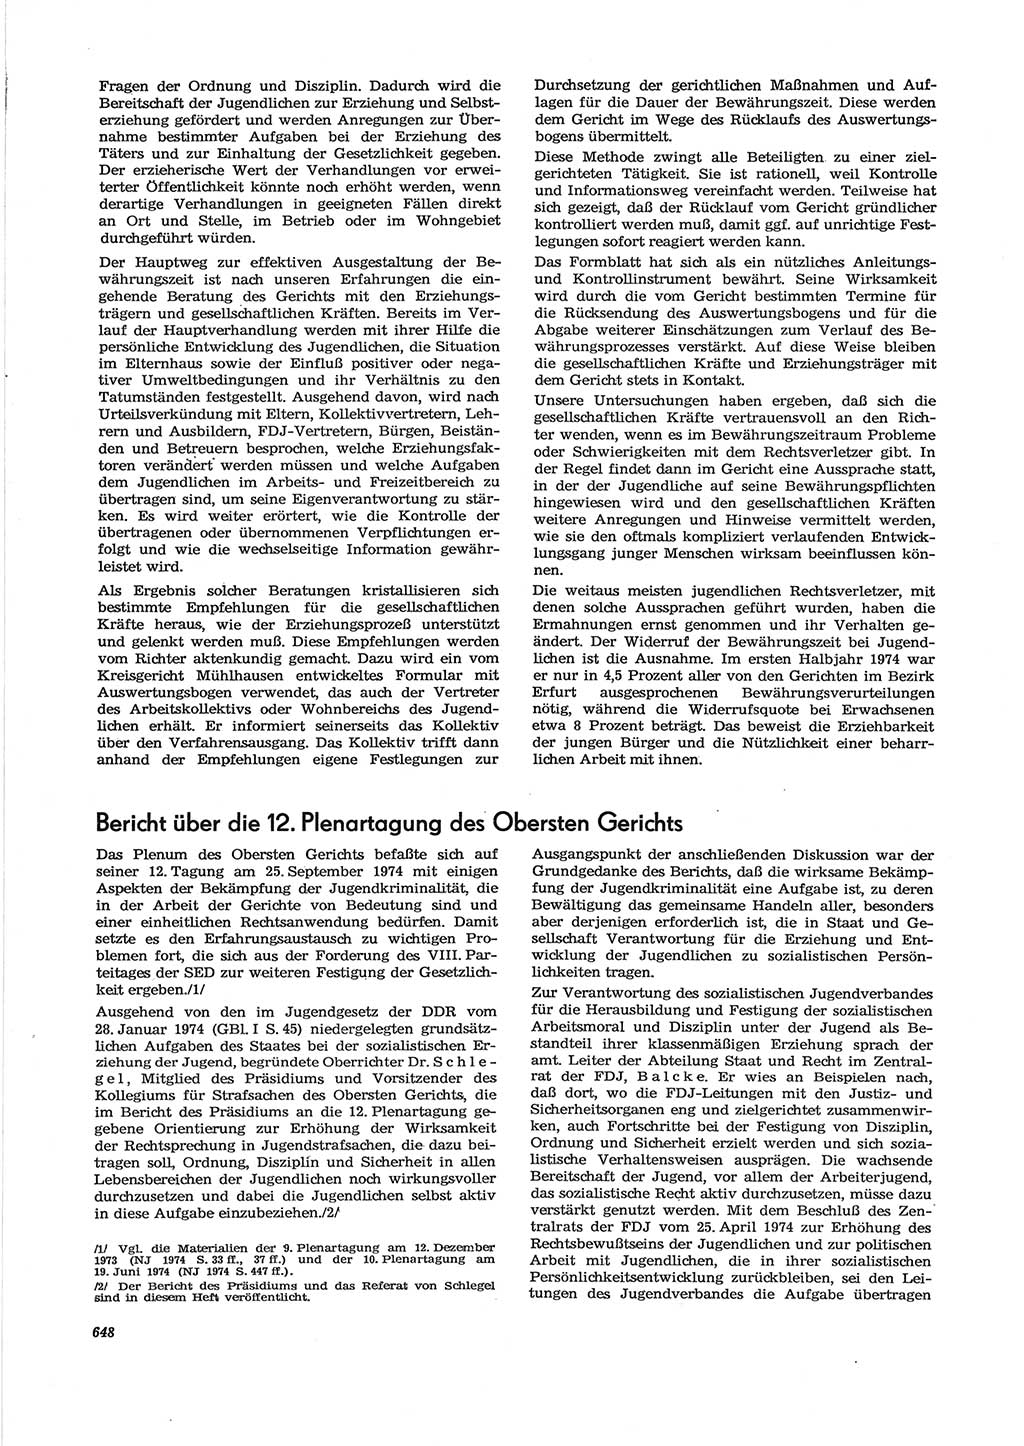 Neue Justiz (NJ), Zeitschrift für Recht und Rechtswissenschaft [Deutsche Demokratische Republik (DDR)], 28. Jahrgang 1974, Seite 648 (NJ DDR 1974, S. 648)